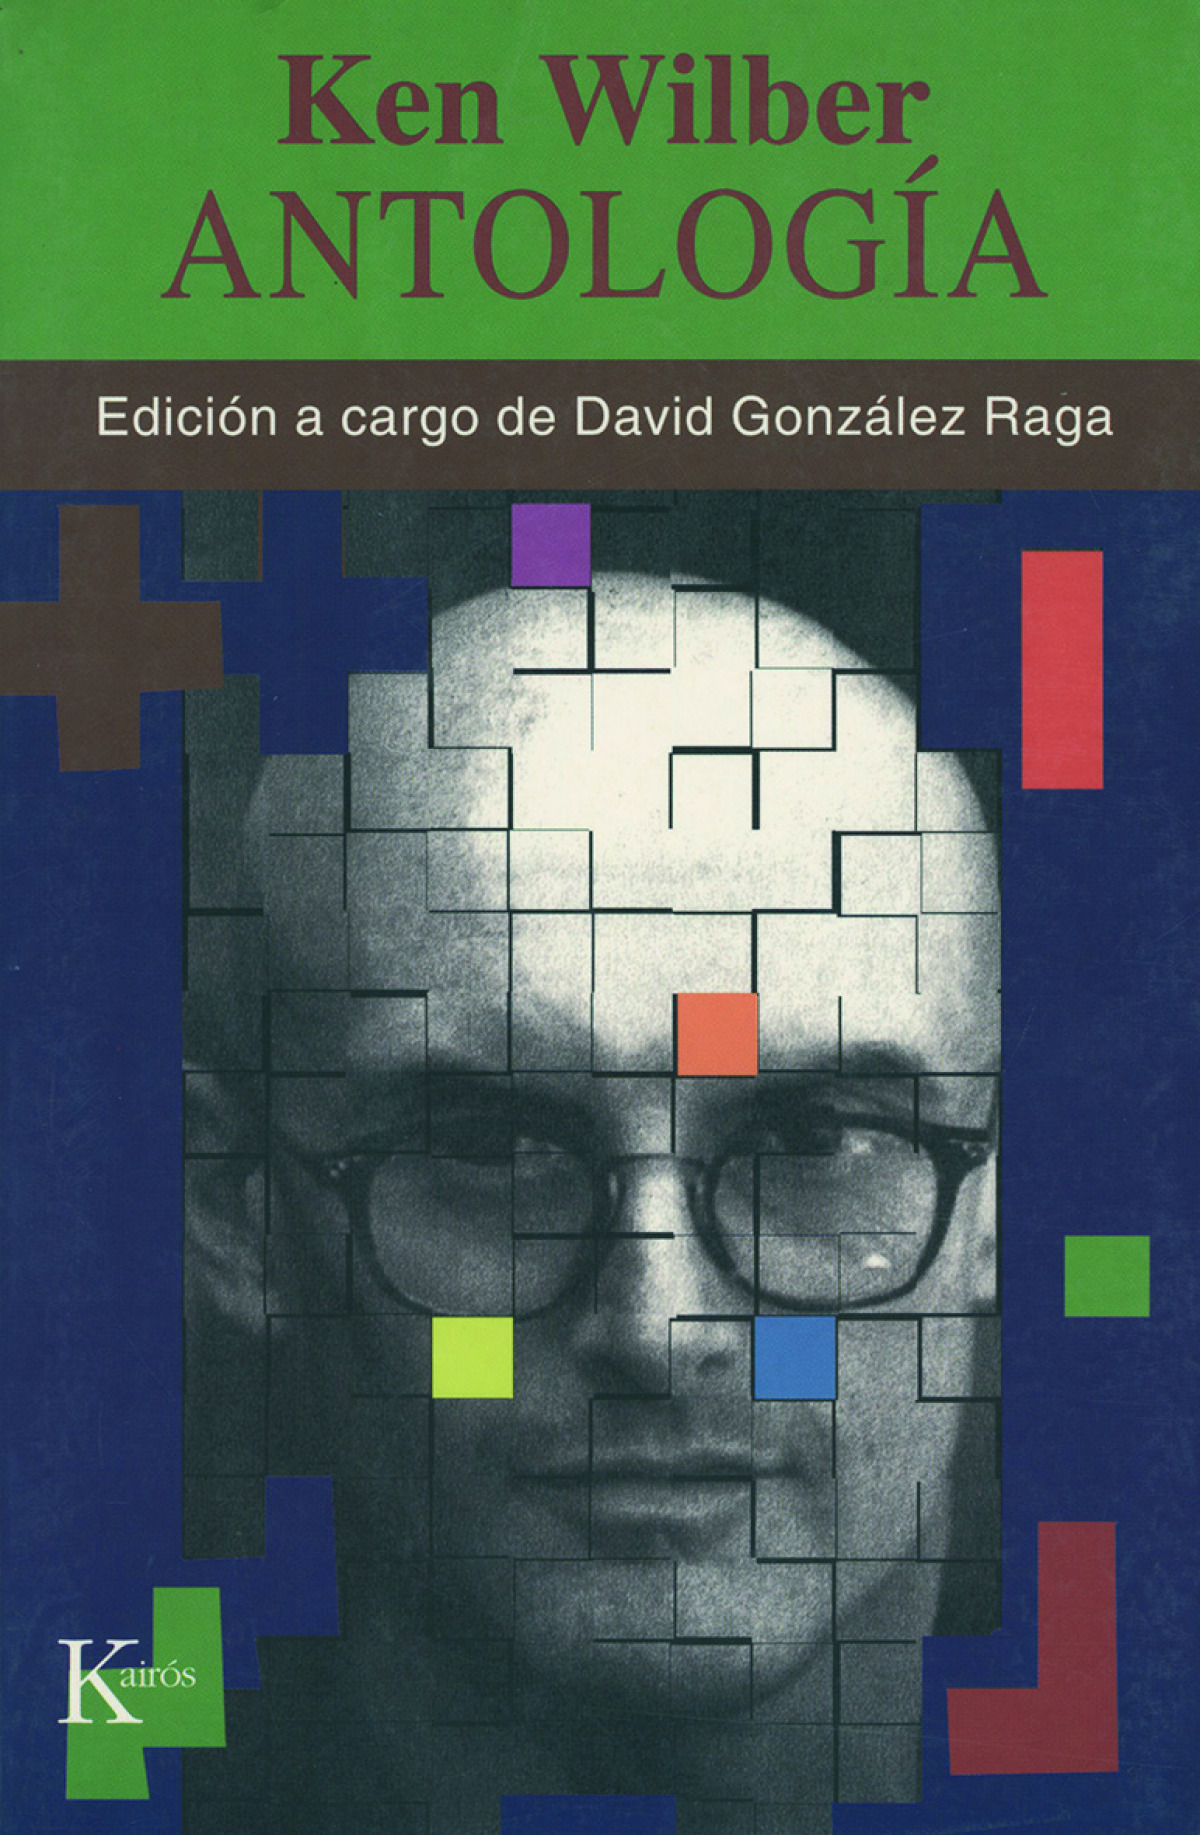 Antología DE KEN WILBER - González Raga, David